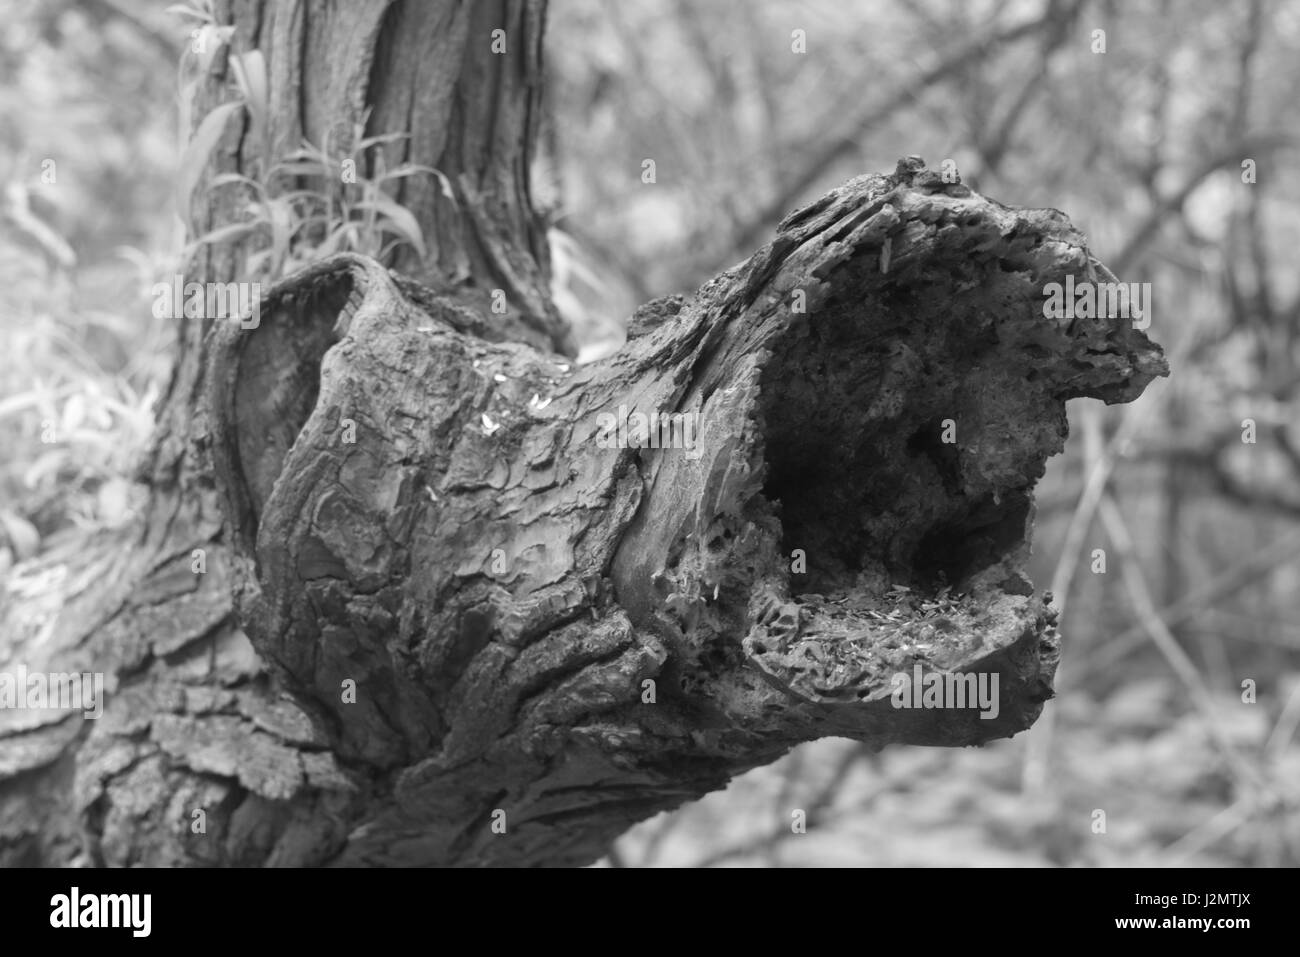 Black and White photos wildlife, plants, trees Stock Photo